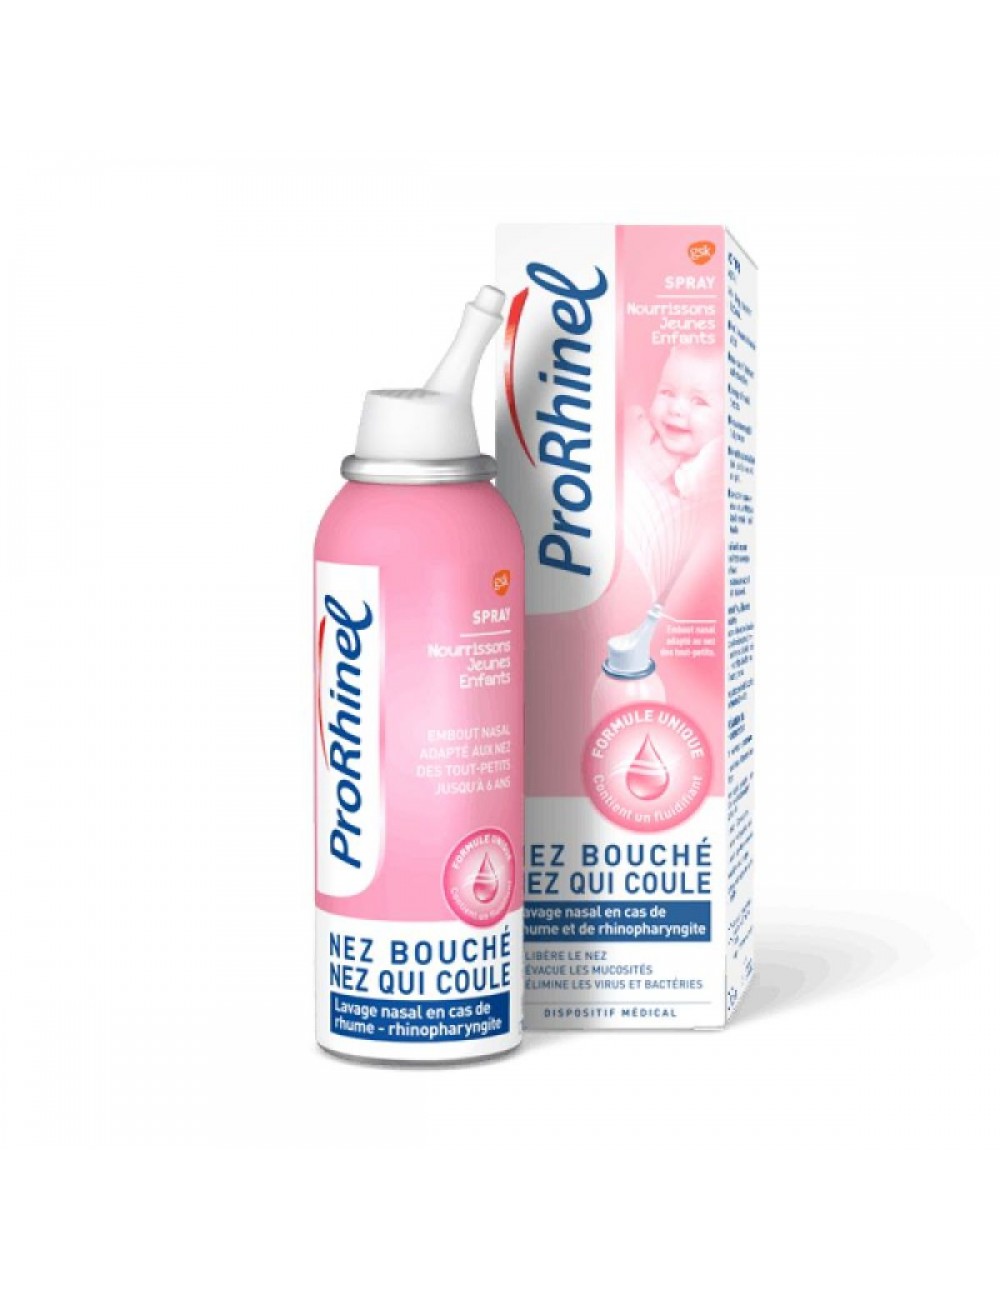 ProRhinel Spray nourrissons et jeunes enfants spray 100 ml